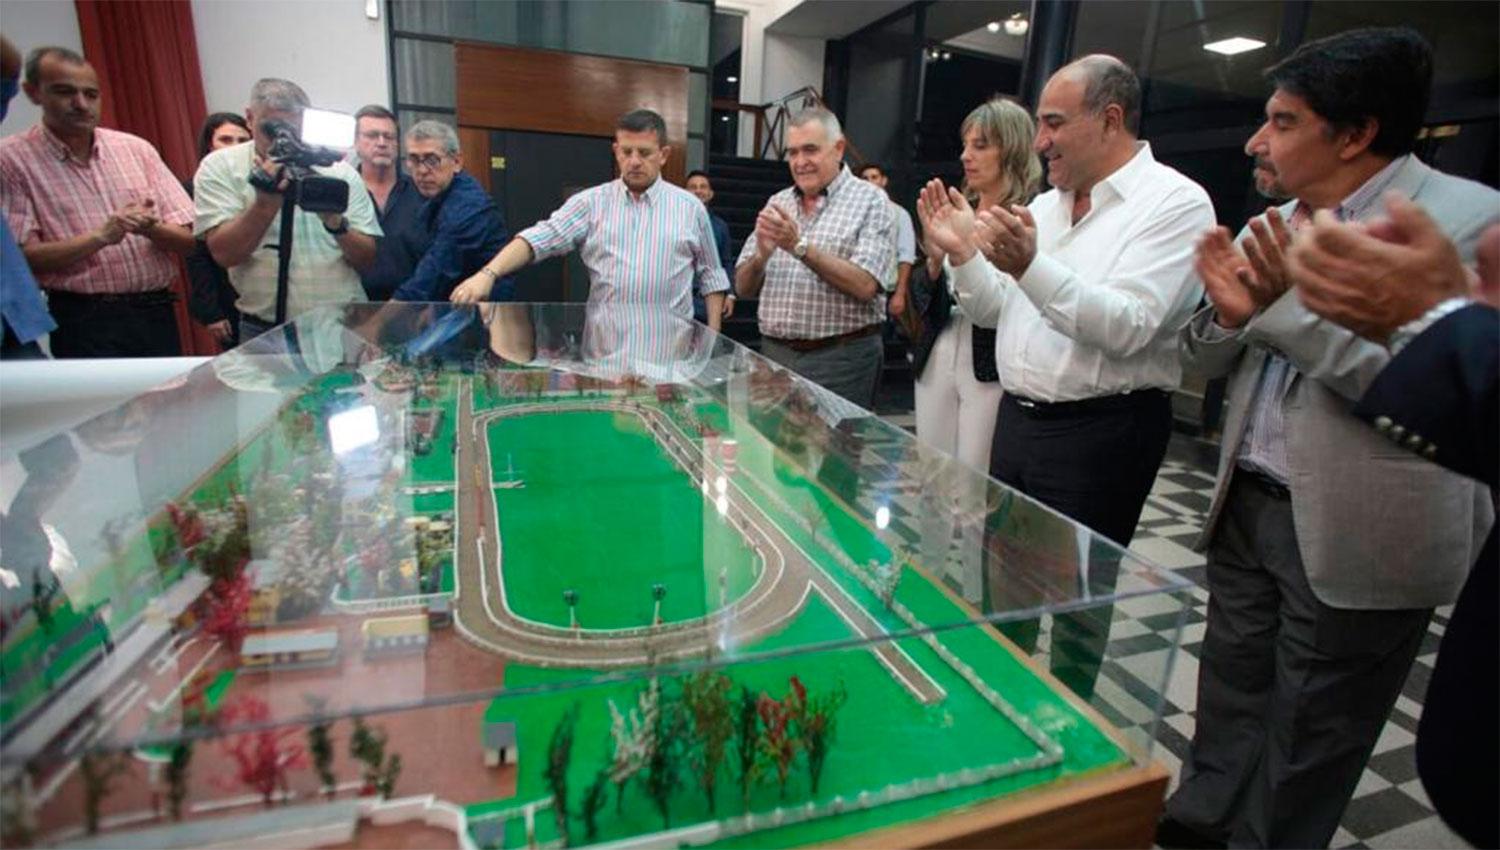 REMODELACIÓN. Manzur, Jaldo, Cisneros, Leito y otros funcionarios observan la maqueta con las obras realizadas en el hipódromo.